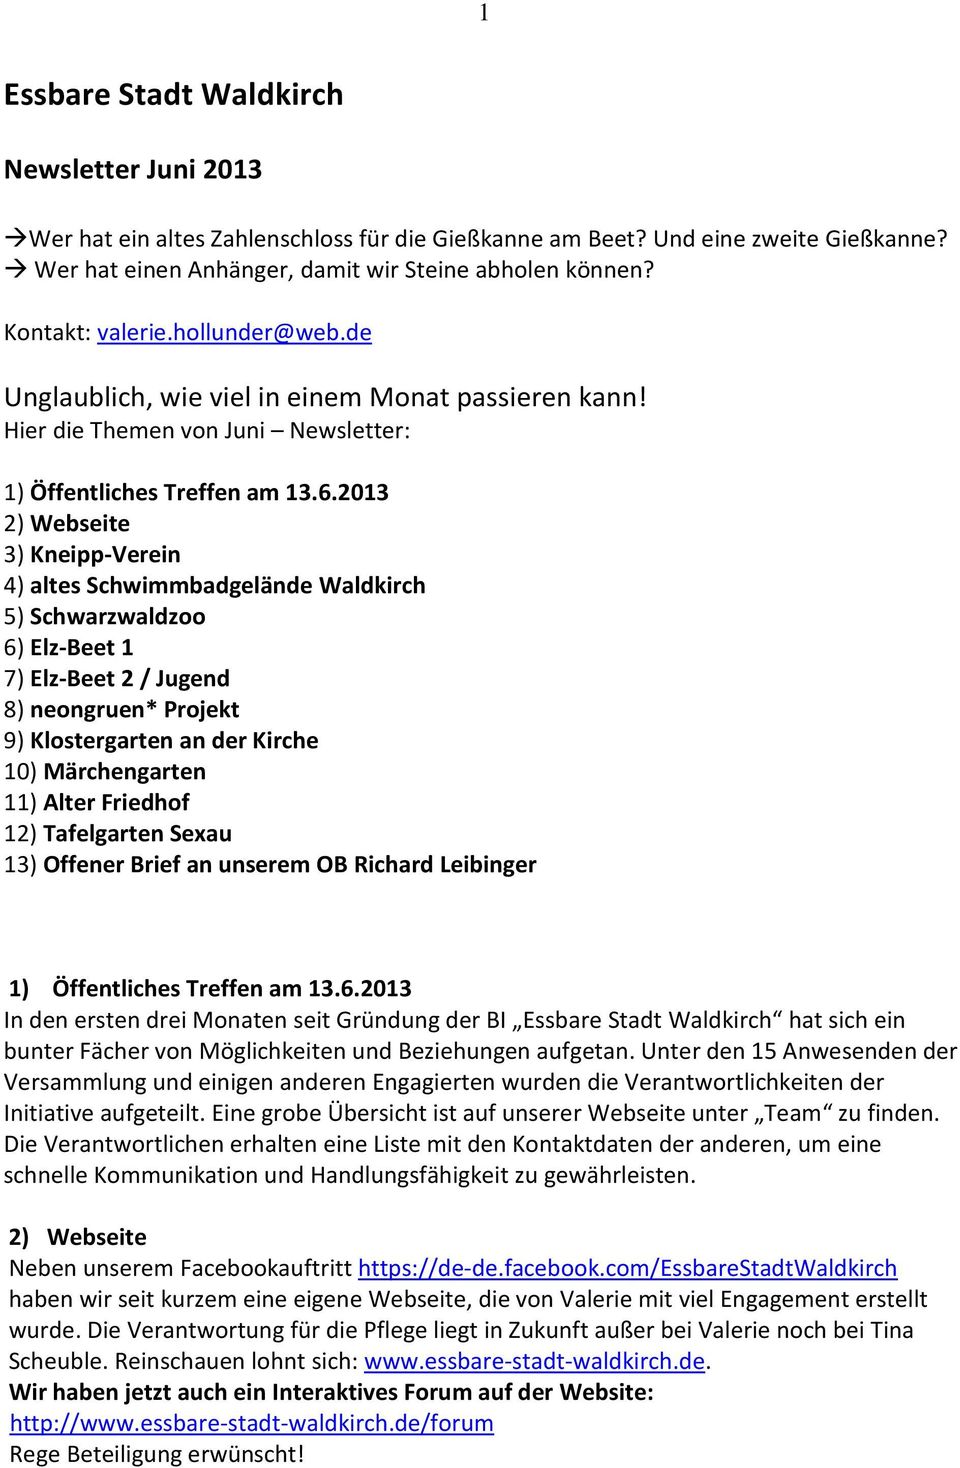 2013 2) Webseite 3) Kneipp-Verein 4) altes Schwimmbadgelände Waldkirch 5) Schwarzwaldzoo 6) Elz-Beet 1 7) Elz-Beet 2 / Jugend 8) neongruen* Projekt 9) Klostergarten an der Kirche 10) Märchengarten